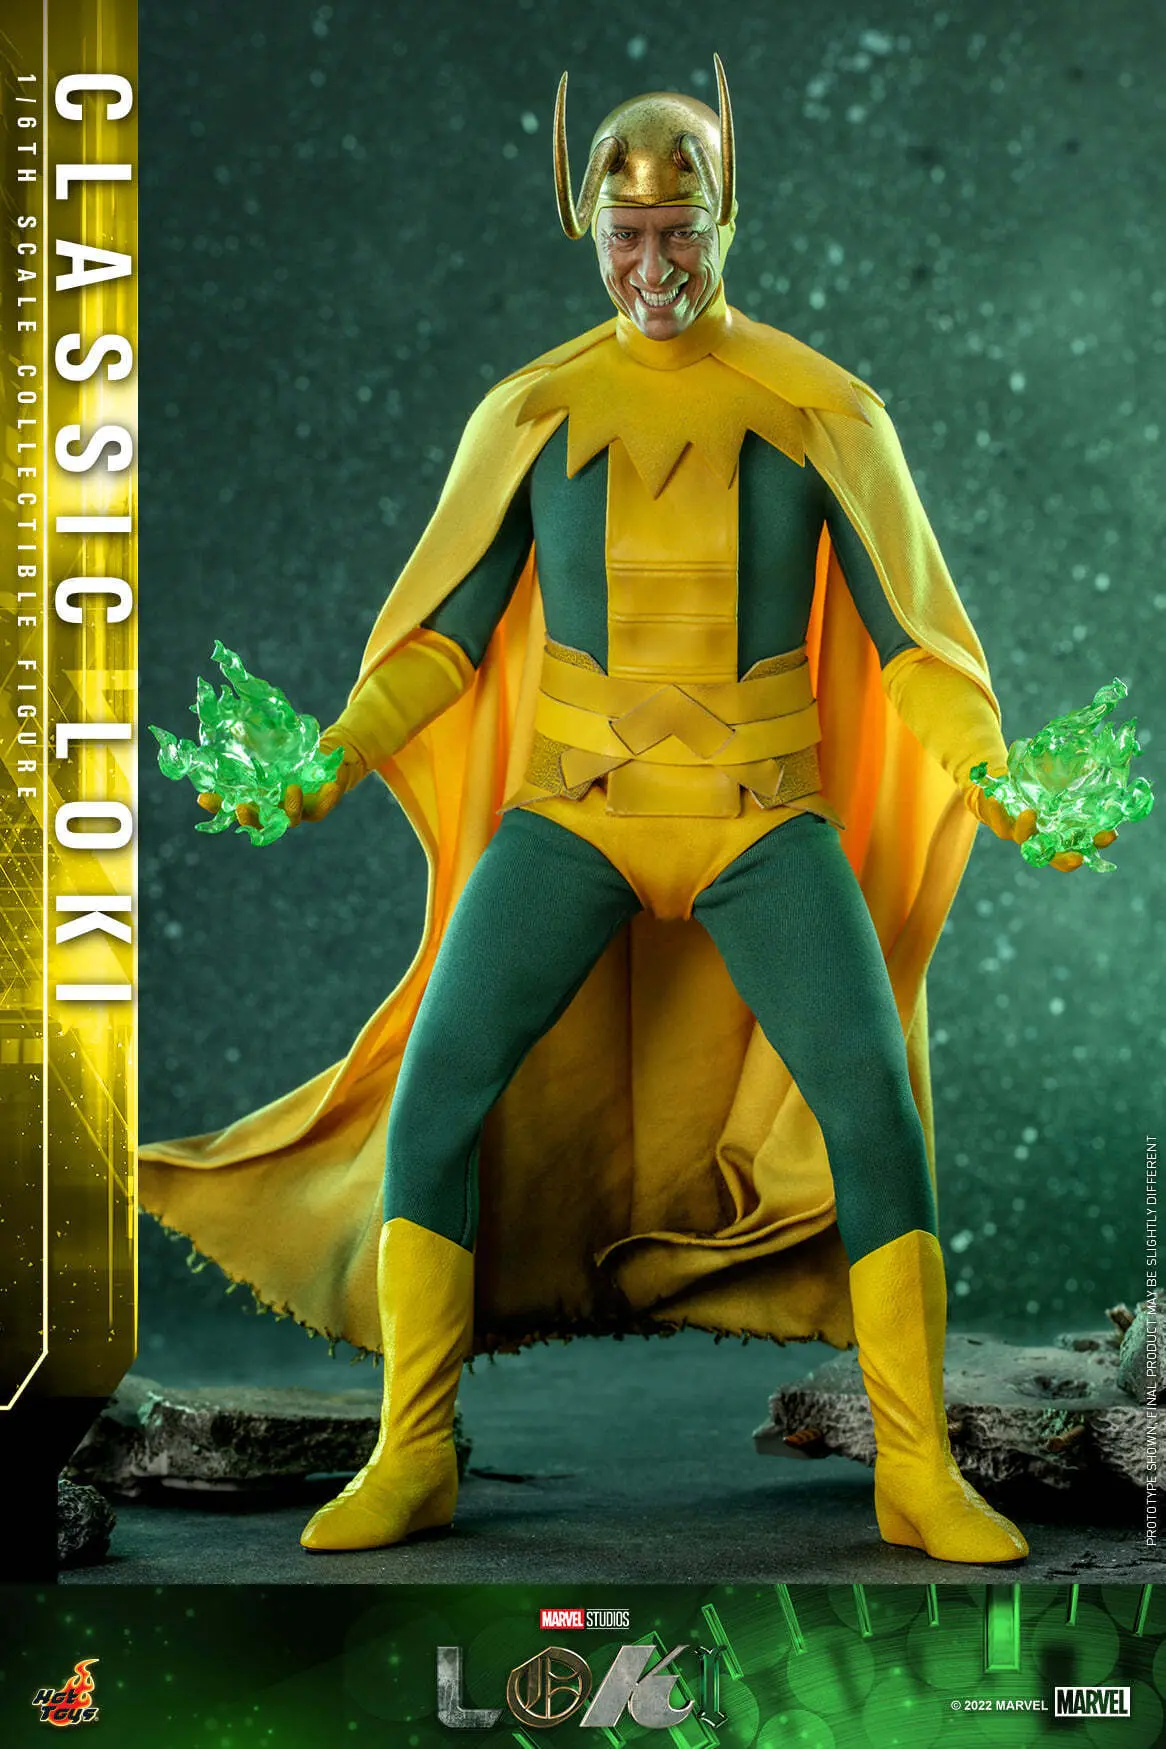 Universo Marvel 616: Fotos das filmagens de Loki revelam novo ator